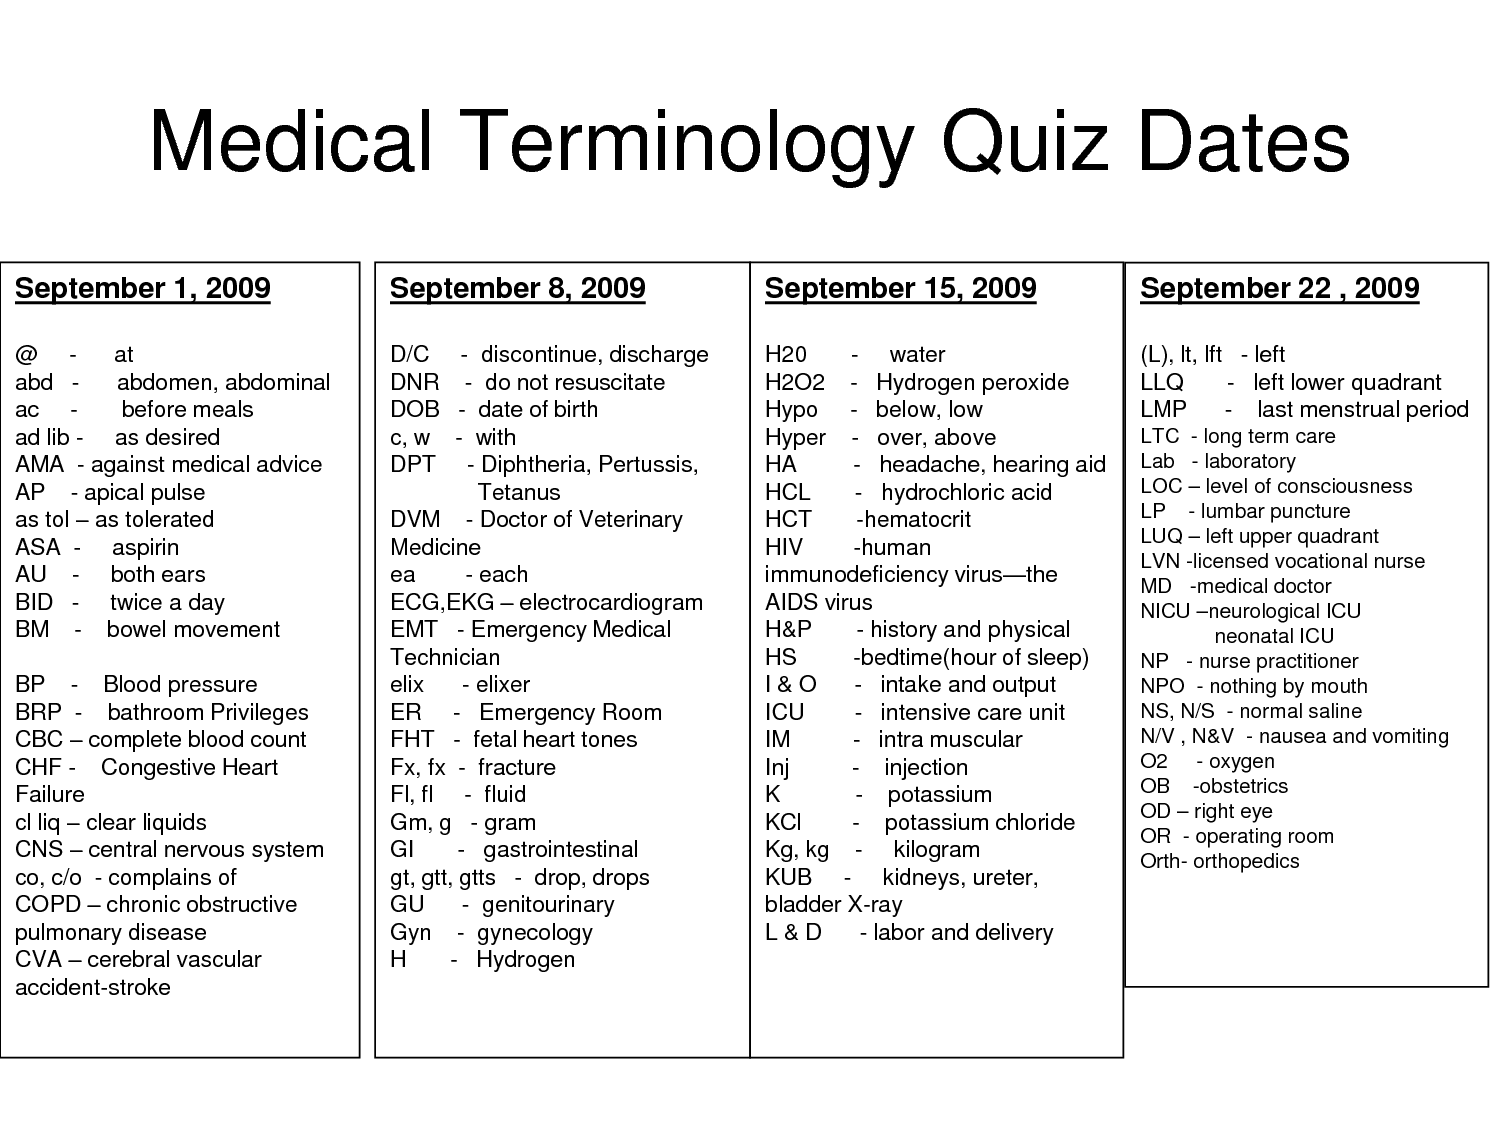 Medical Terminology Prefixes Worksheet - Nidecmege Throughout Medical Terminology Prefixes Worksheet